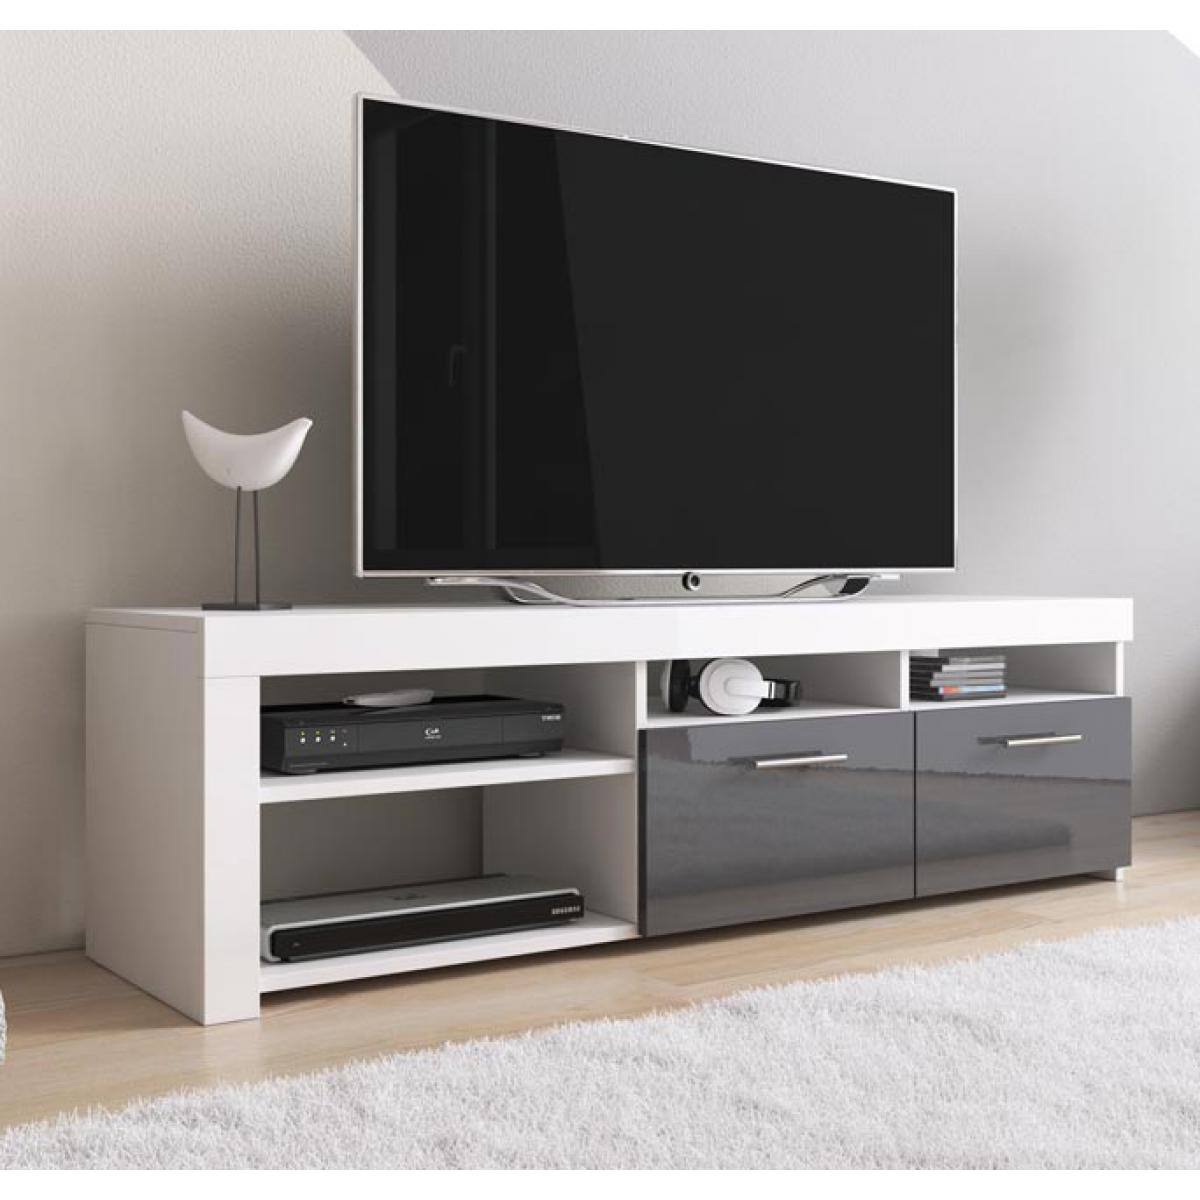 Design Ameublement - Meuble TV modèle Clio (140x40cm) couleur blanc et gris - Meubles TV, Hi-Fi